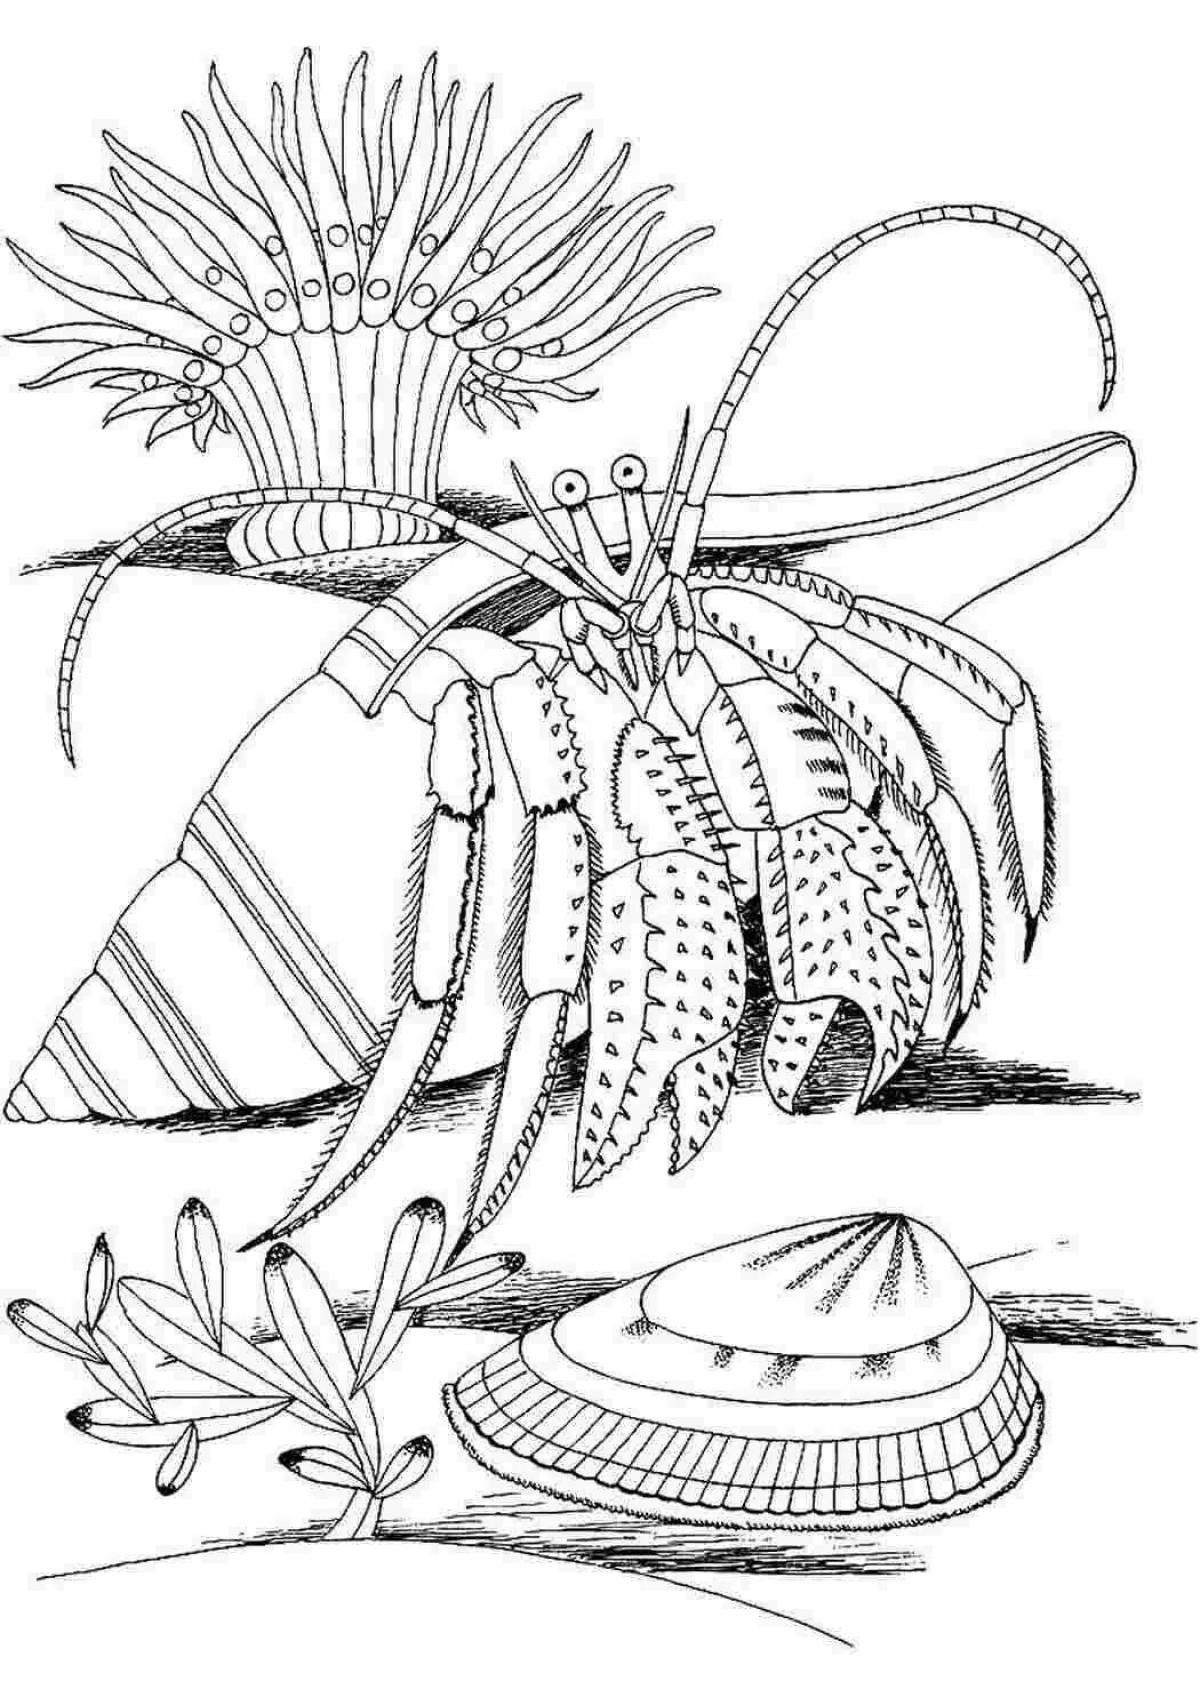 Harmonious sea anemones